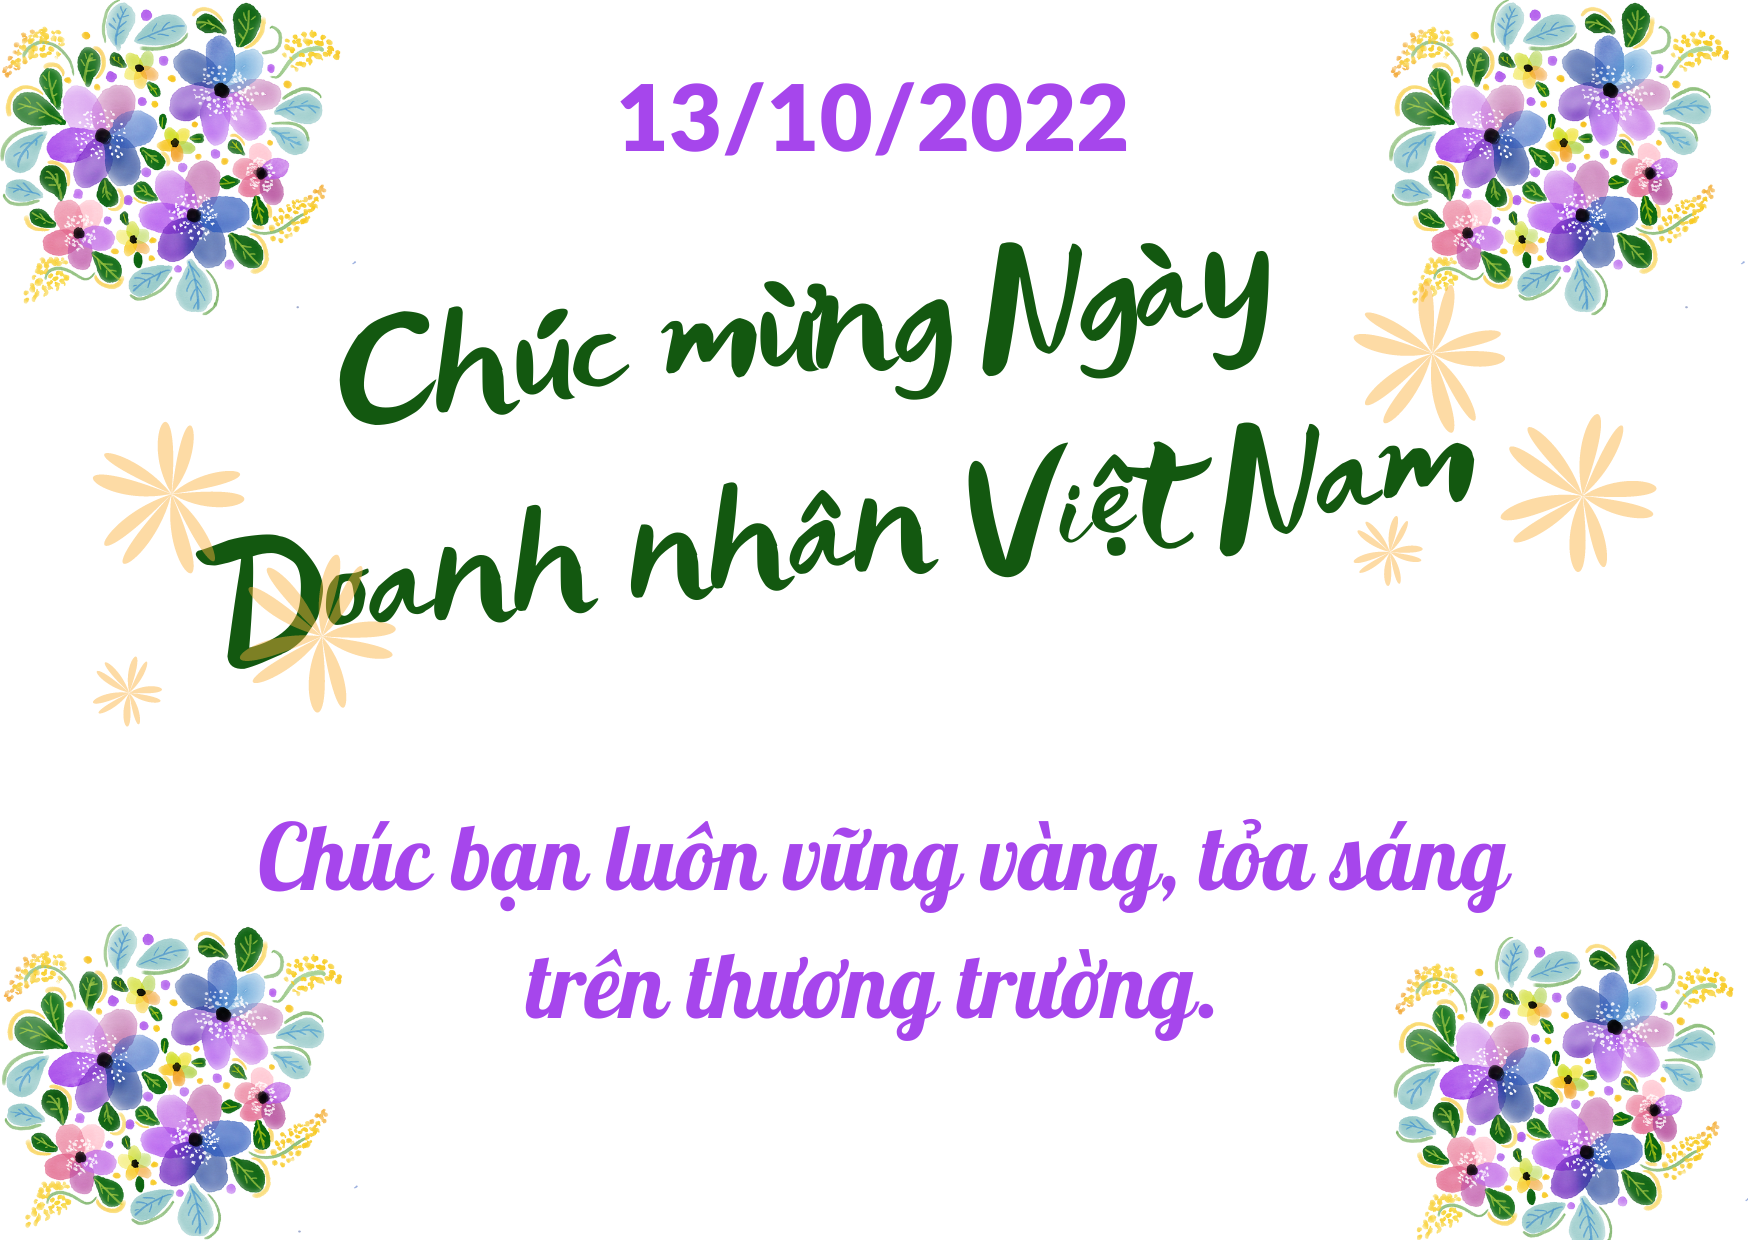 Lời chúc hay, ý nghĩa nhân ngày Doanh nhân Việt Nam 13/10 - Ảnh 4